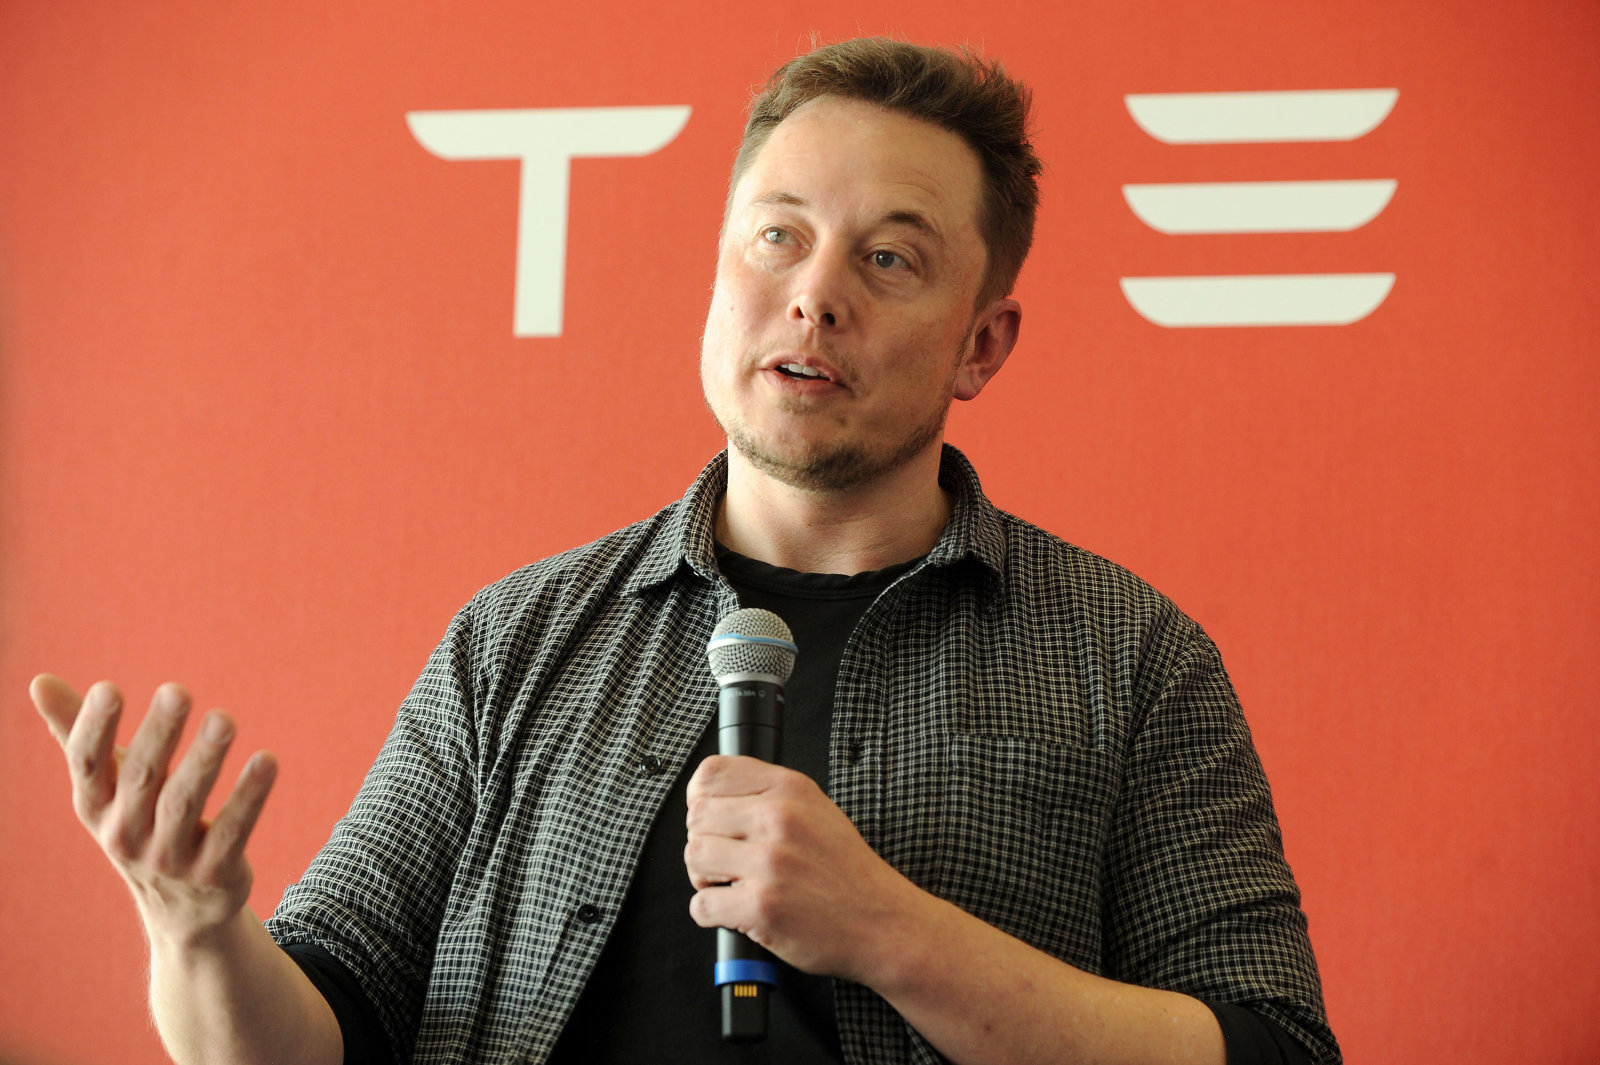 SEC undersøger tweets Elon musk om Tesla output fra børsen. Forretningsmand venter på retten?